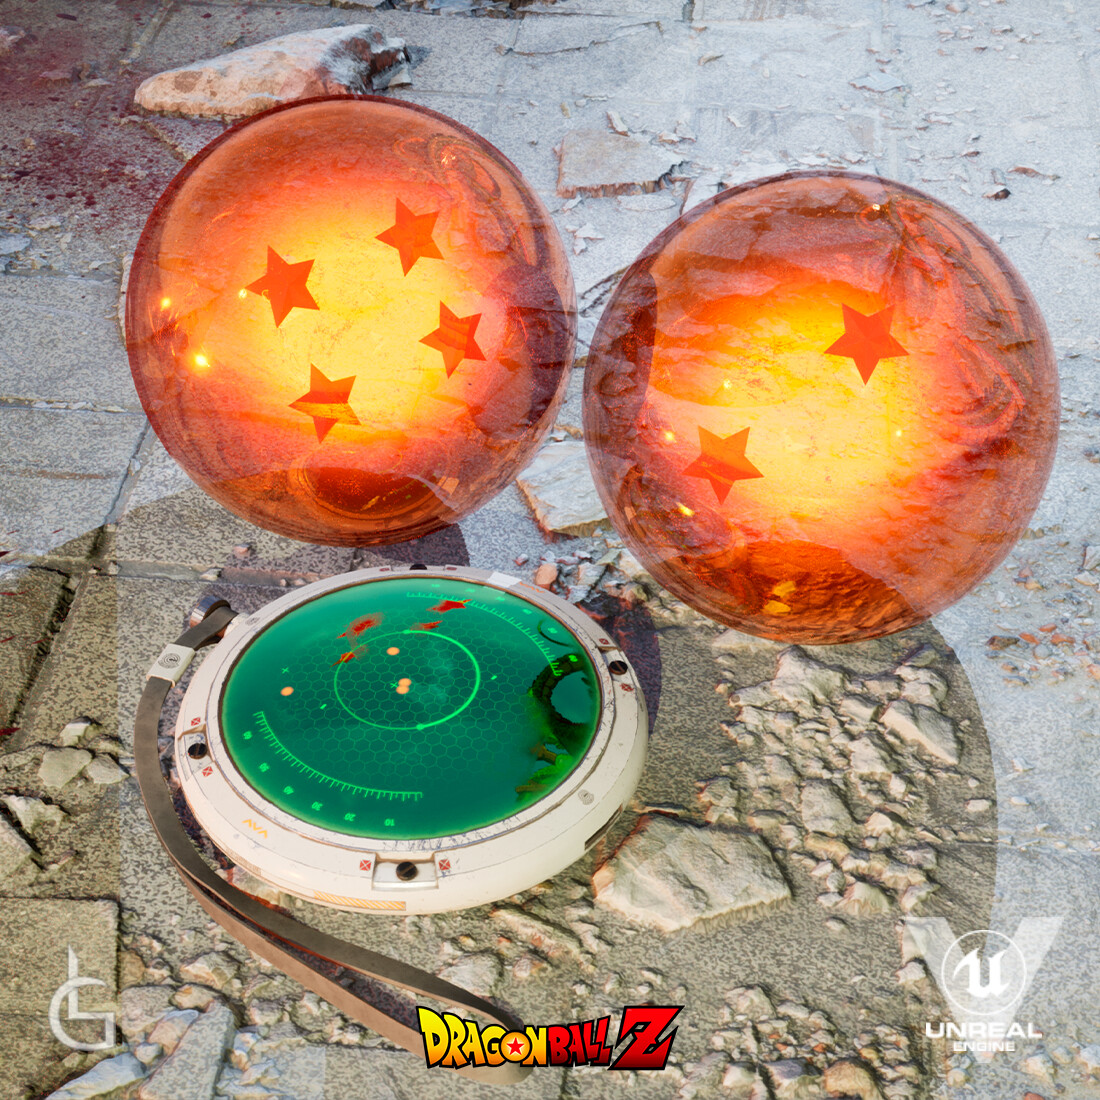 Battle for the Dragon Balls UE5 [DBZ Fan Art]